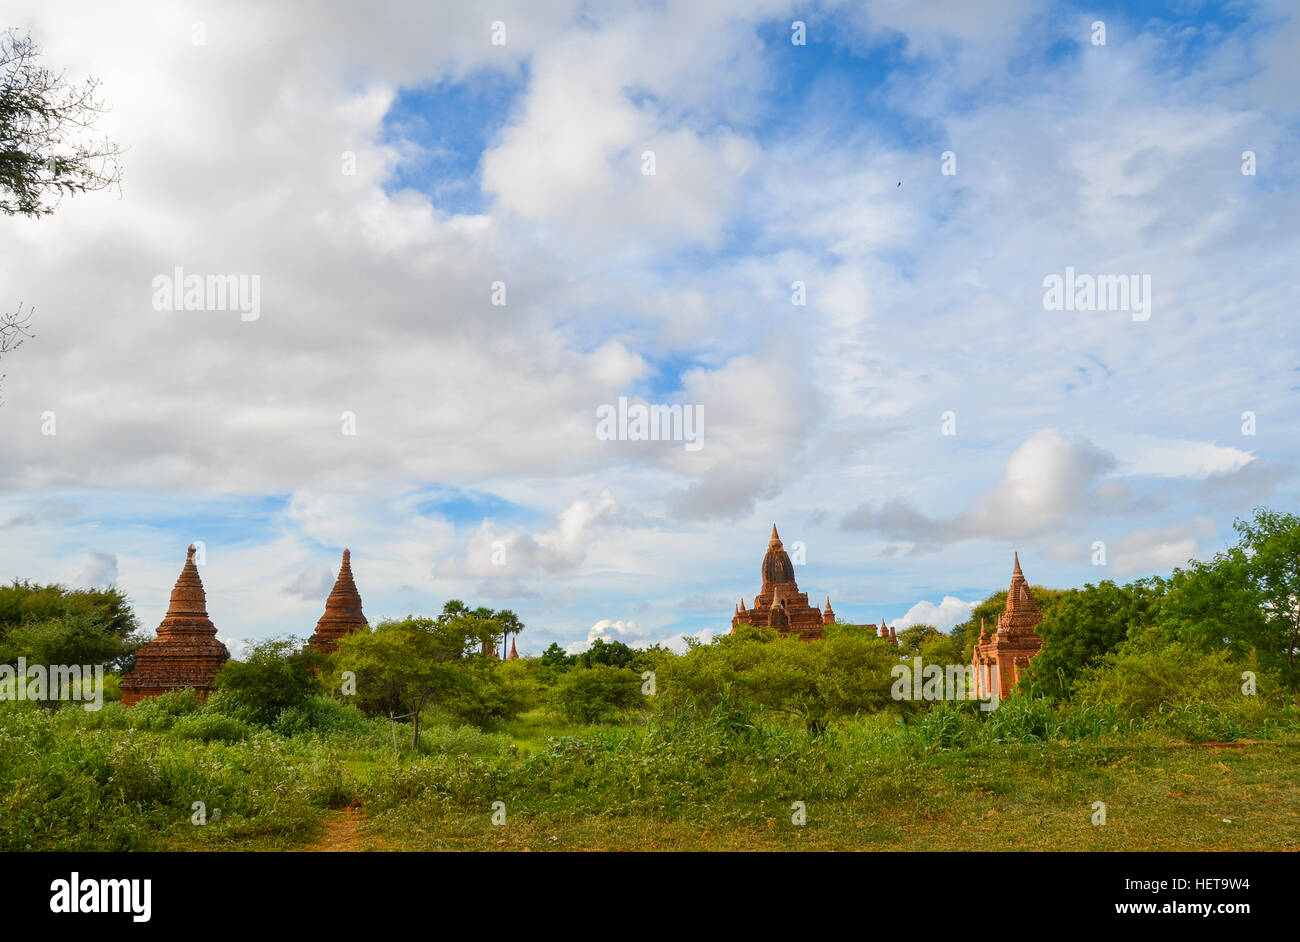 Ancient temples of Bagan, Myanmar Stock Photo